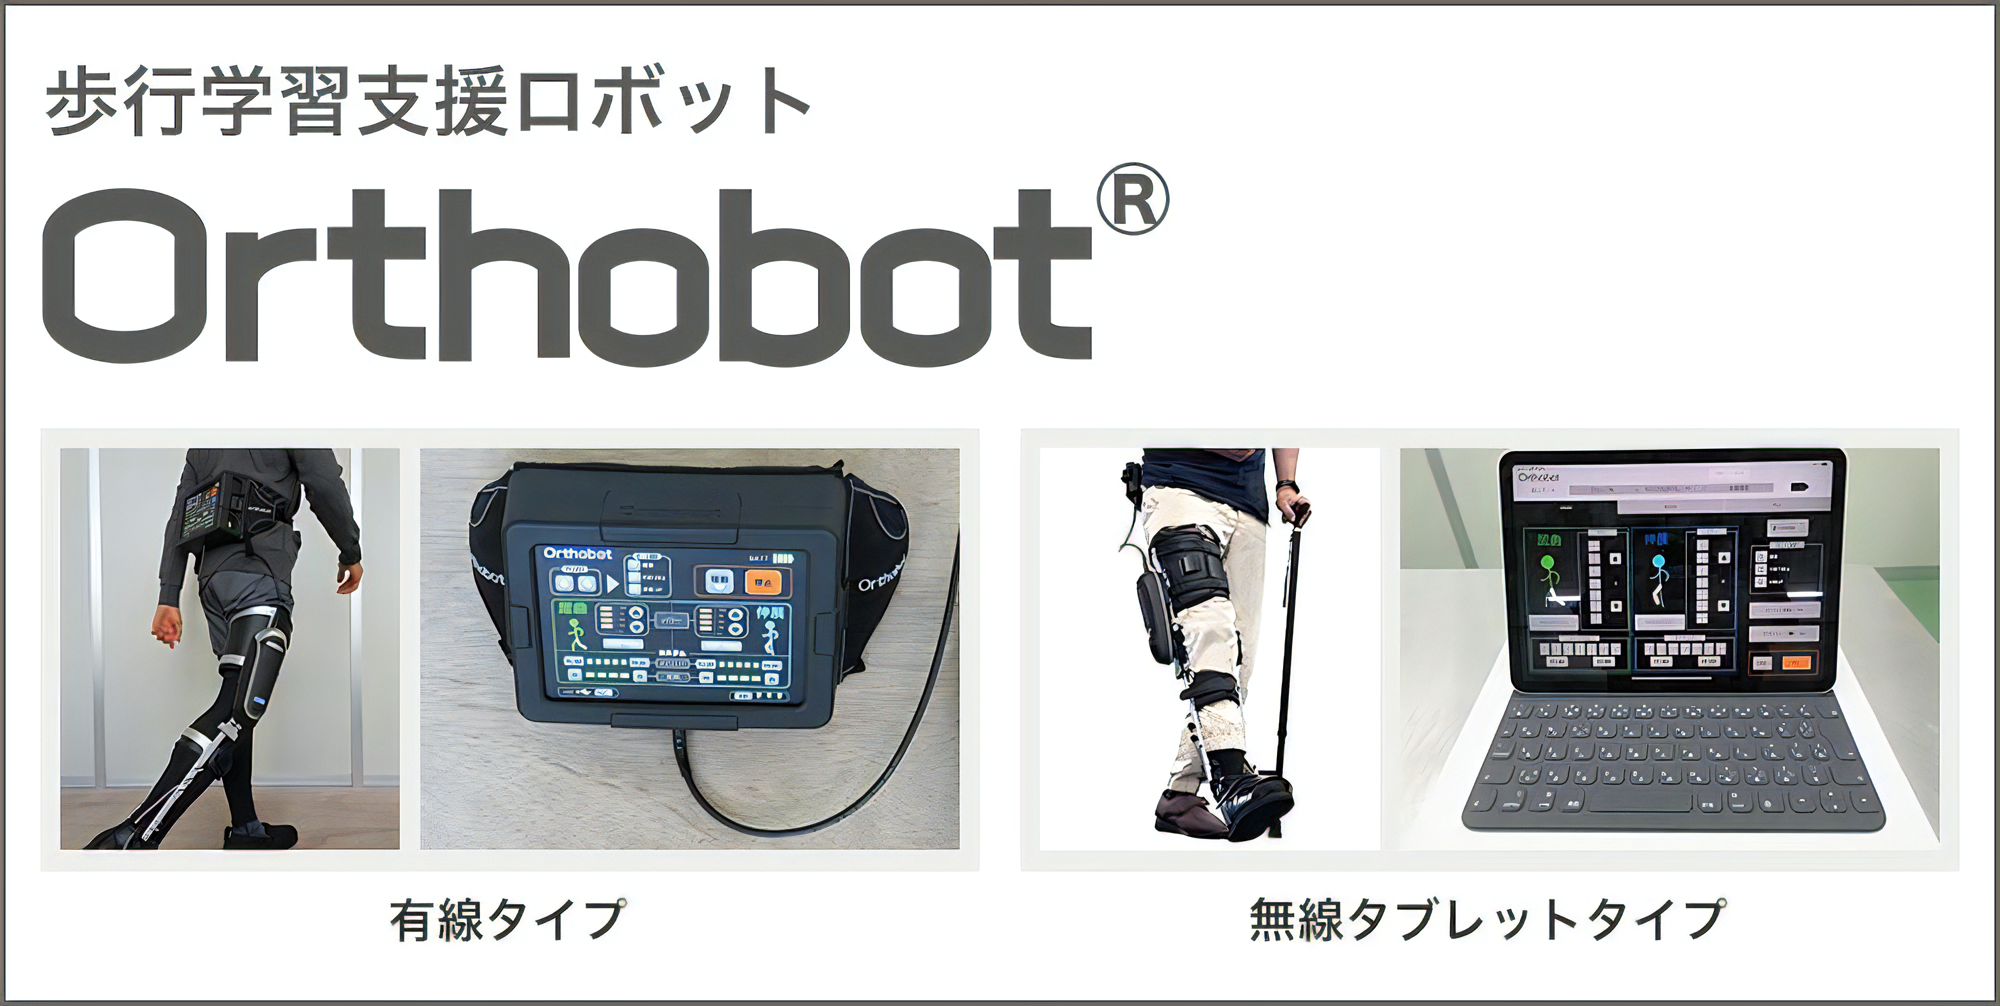 歩行学習支援ロボットOrthobot キービジュアル